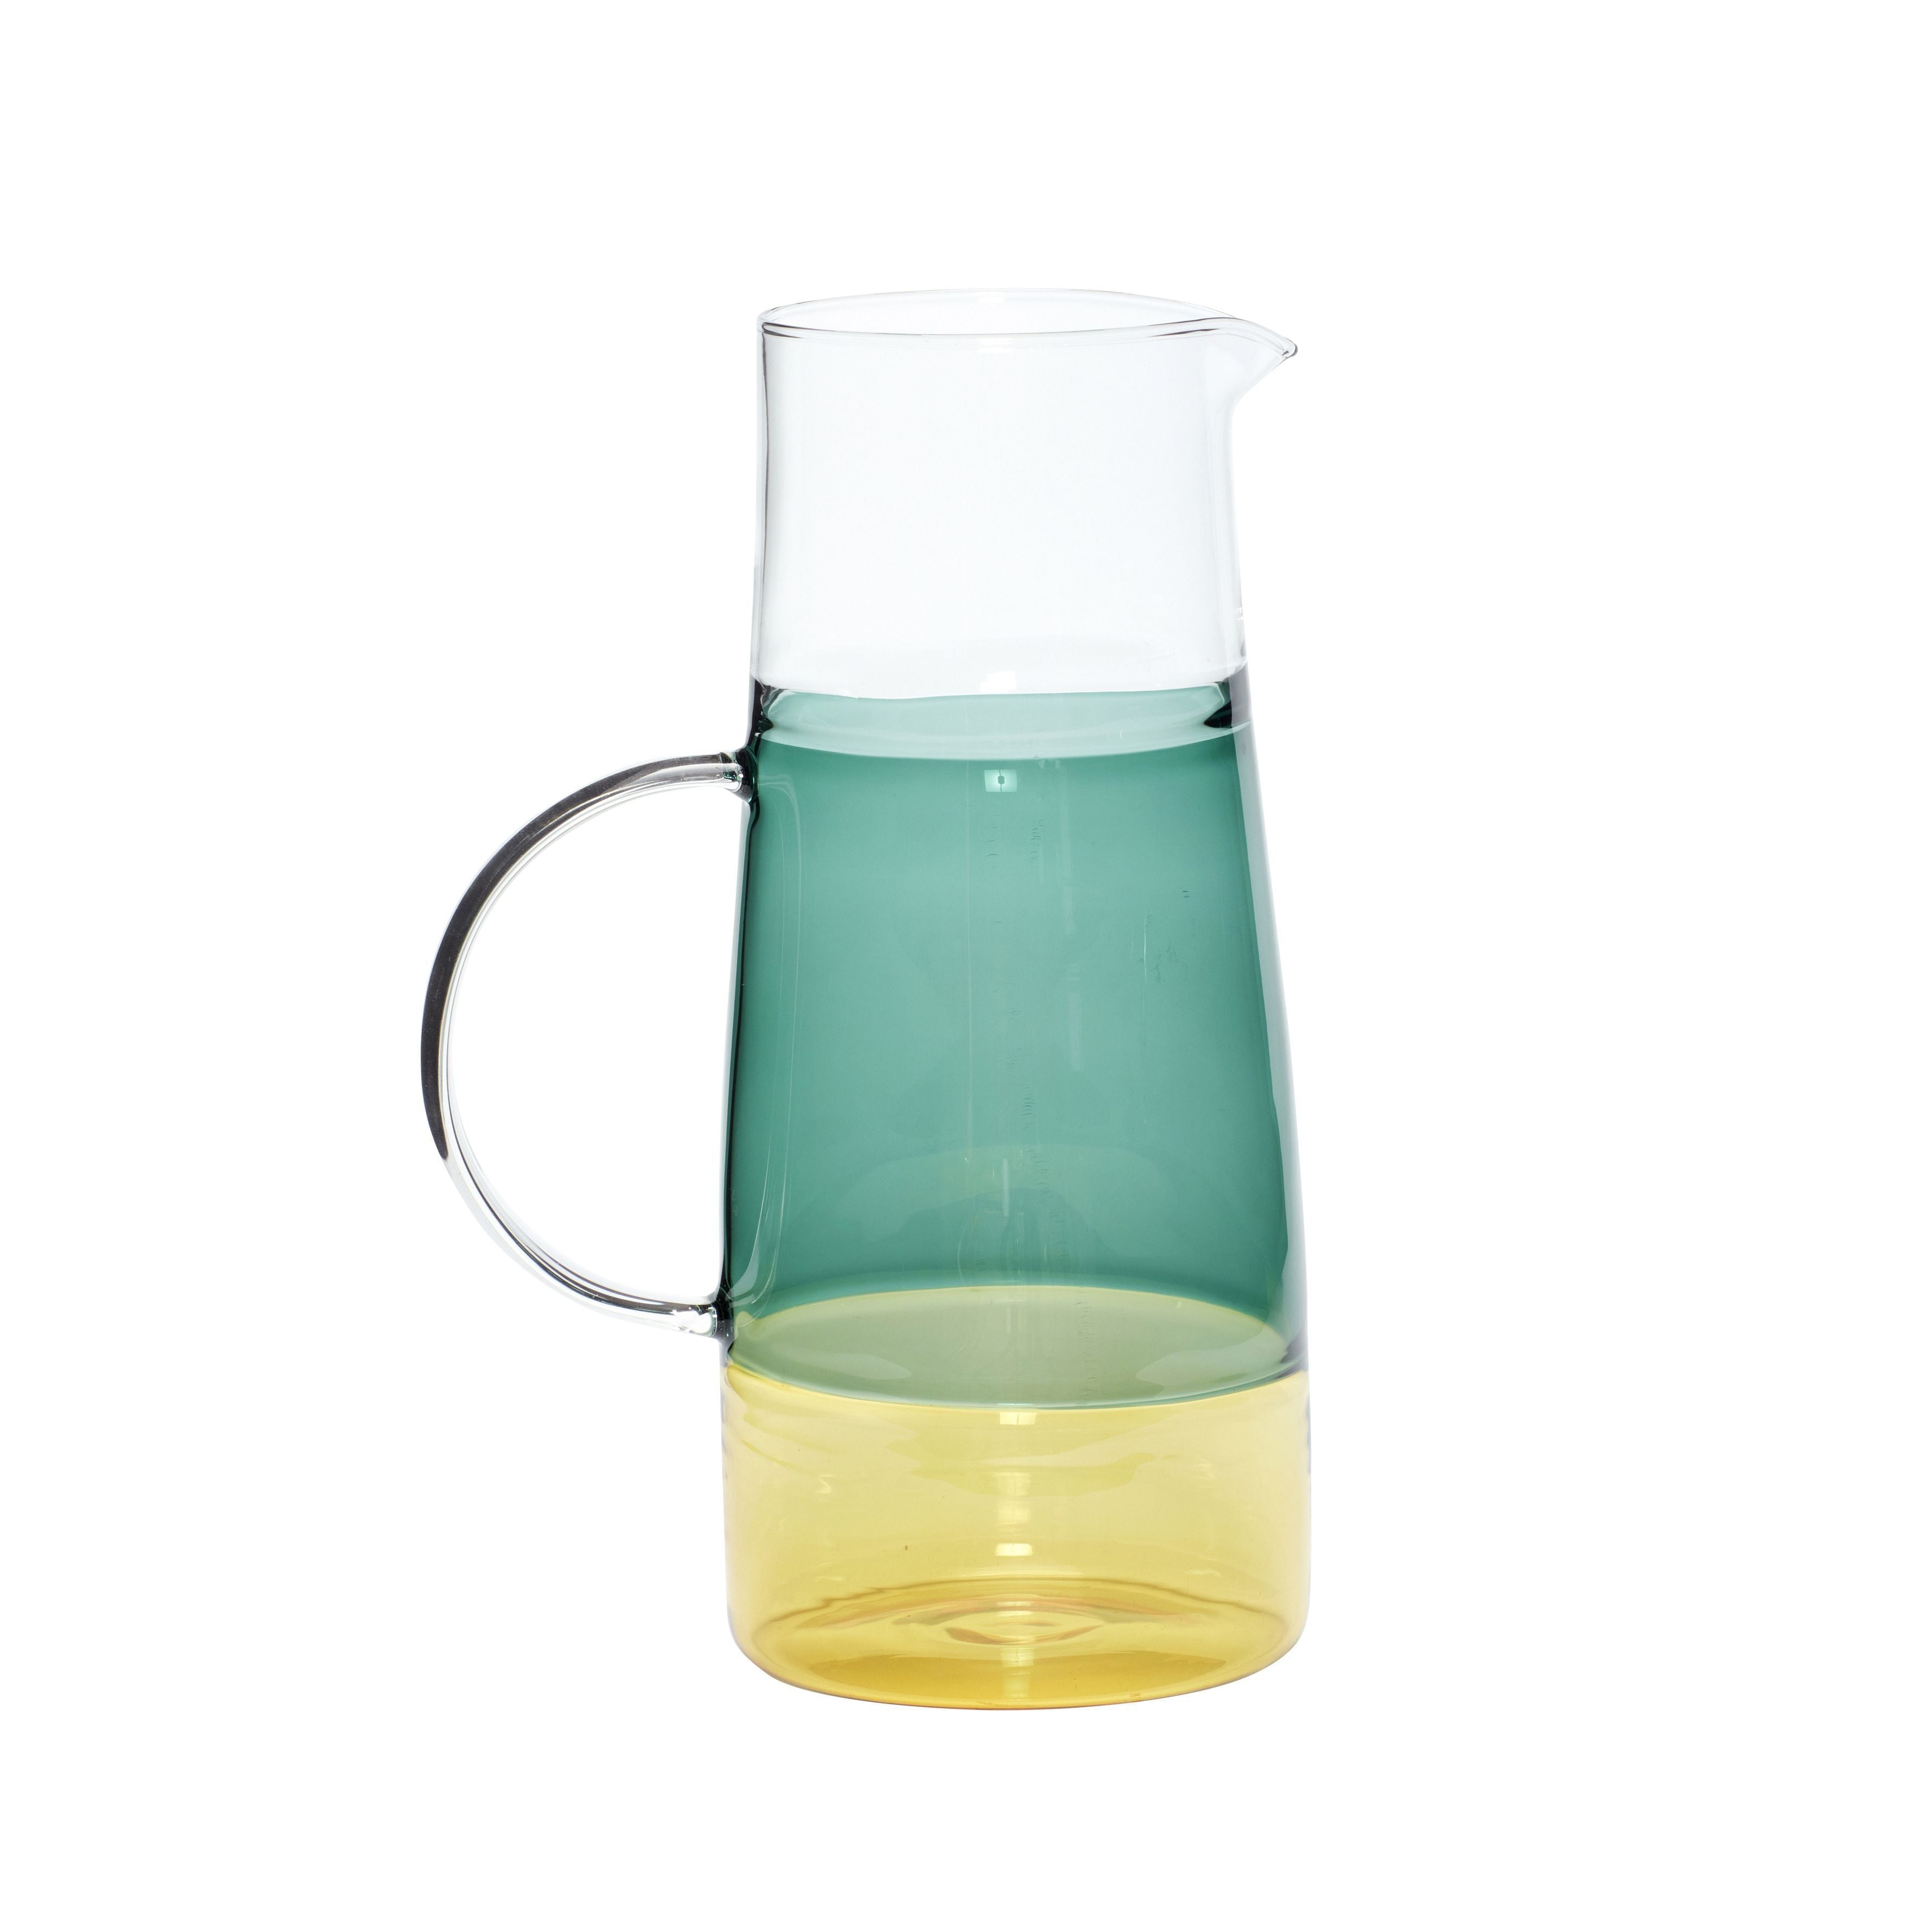 Hübsch Lemonade Carafe Glass Ready/Green/Yellow